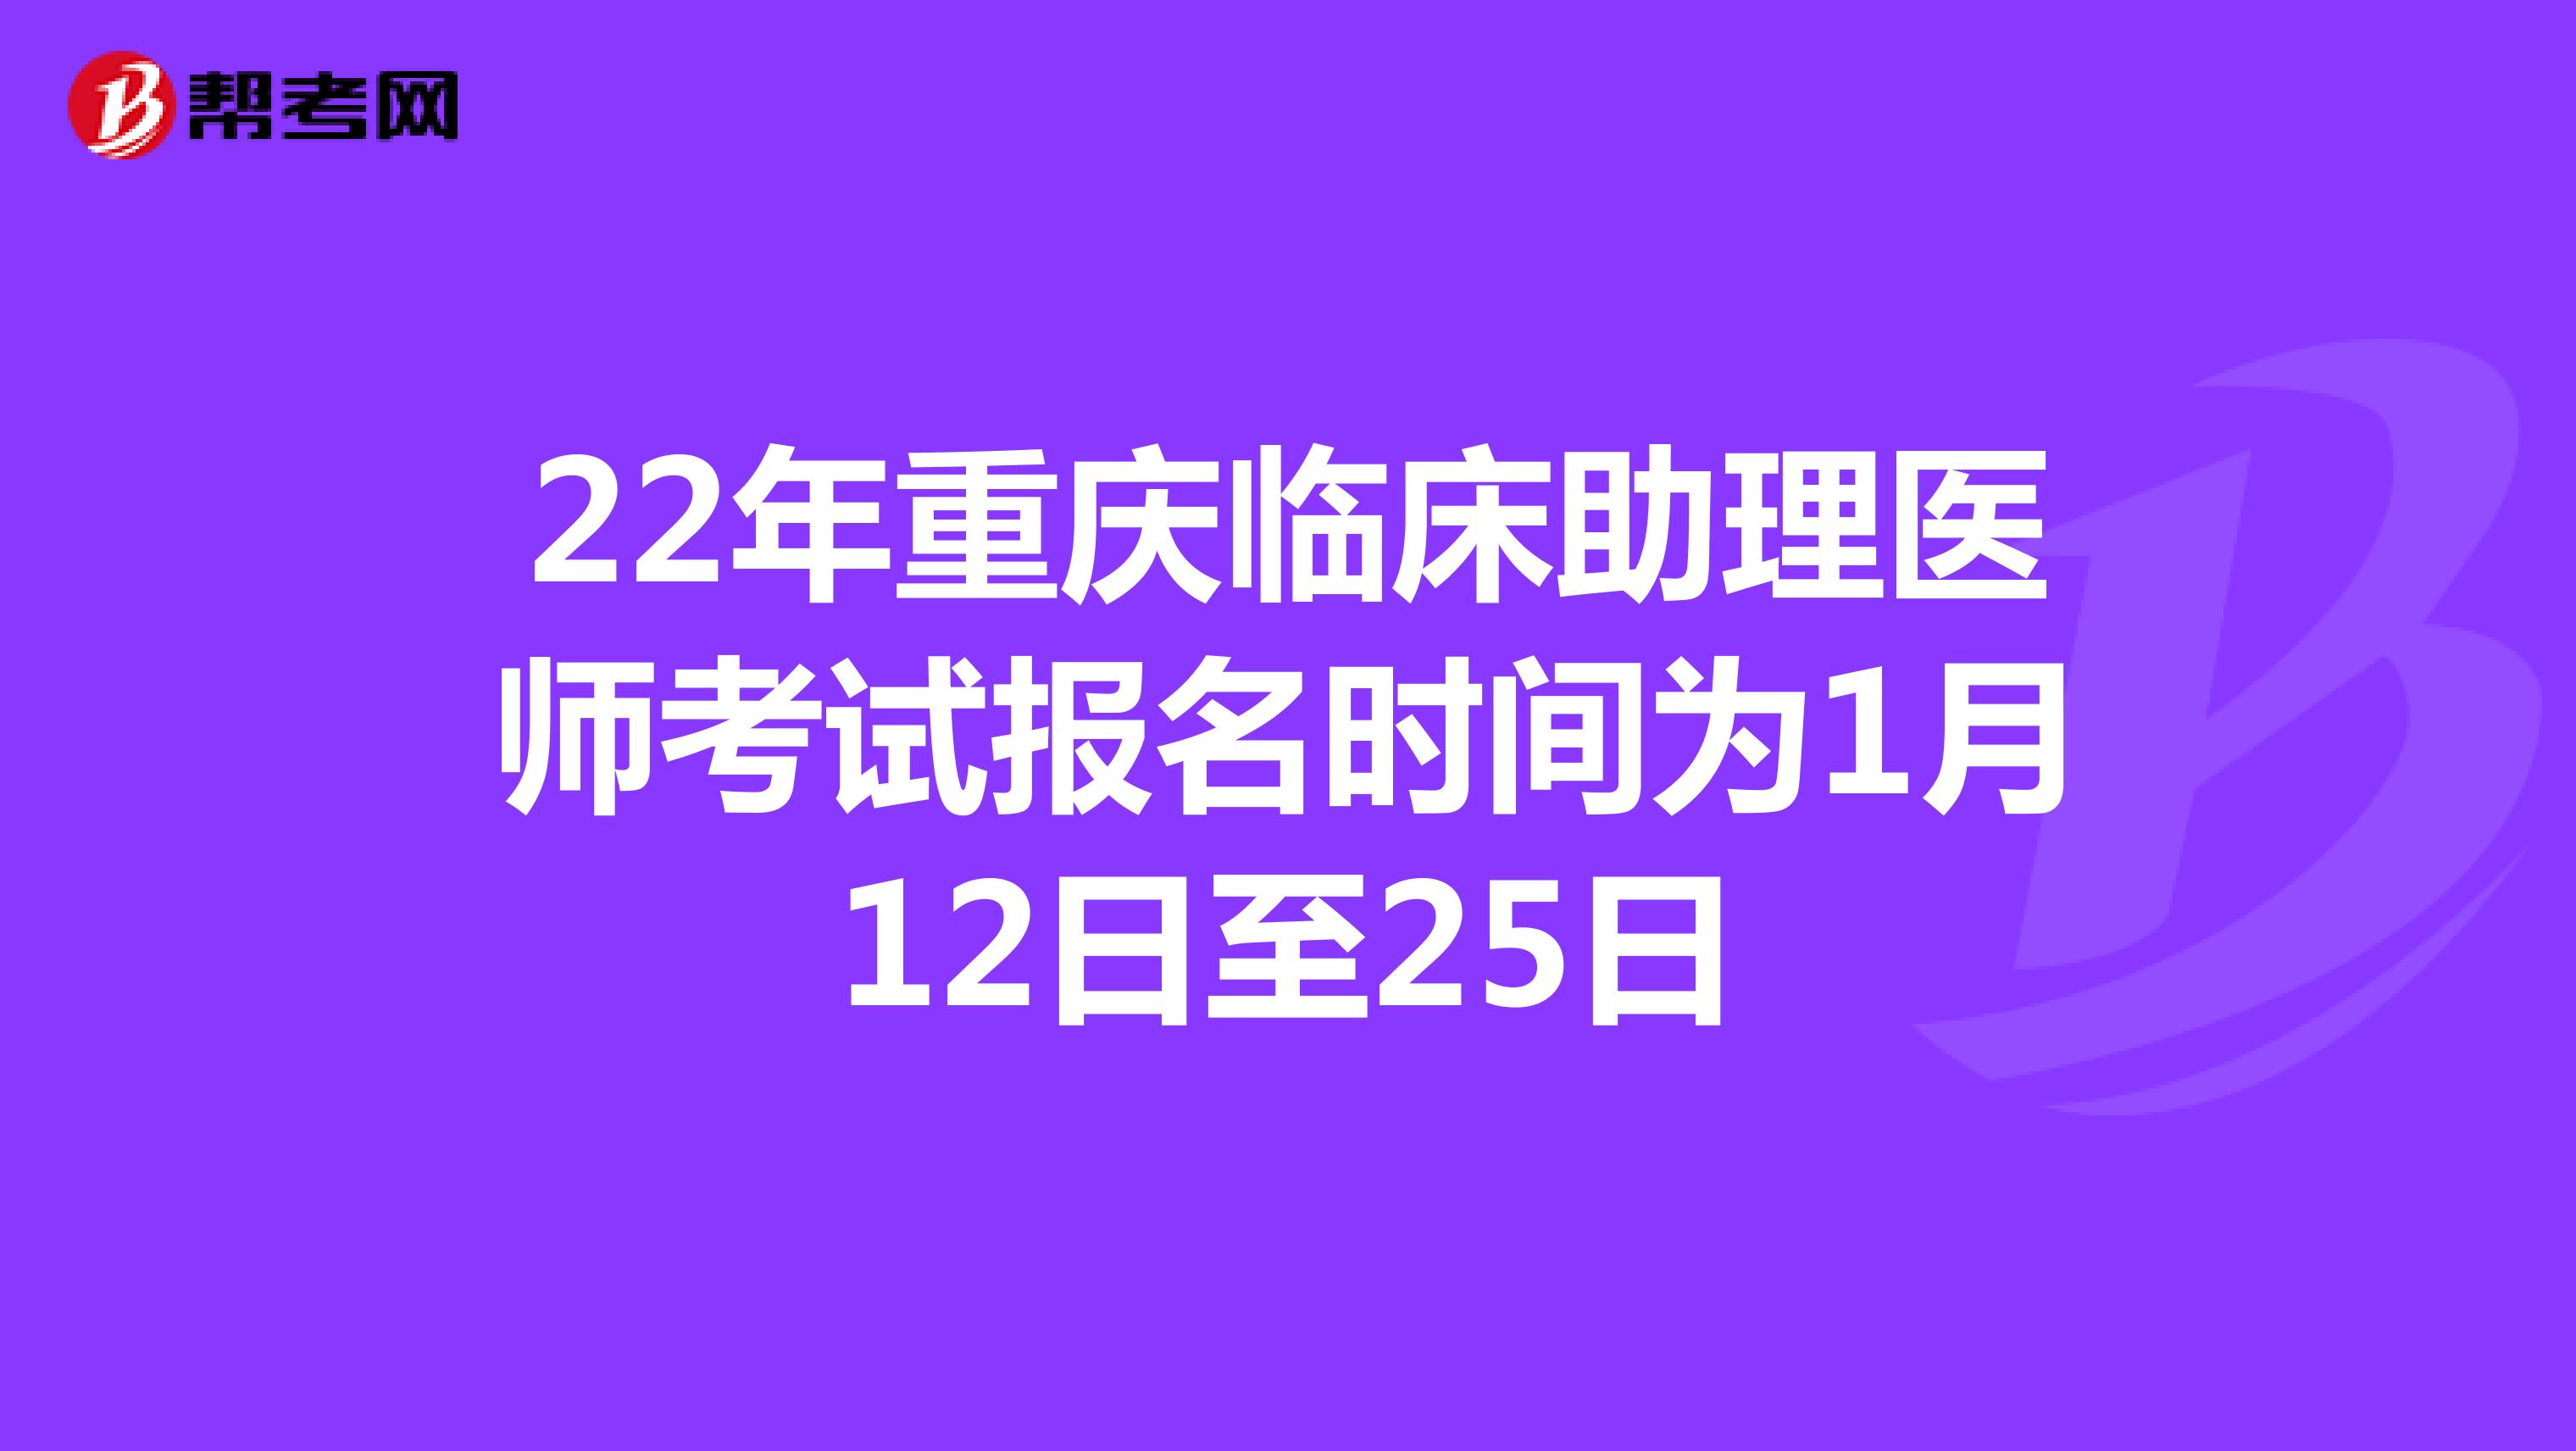 22年重庆临床助理医师考试报名时间为1月12日至25日